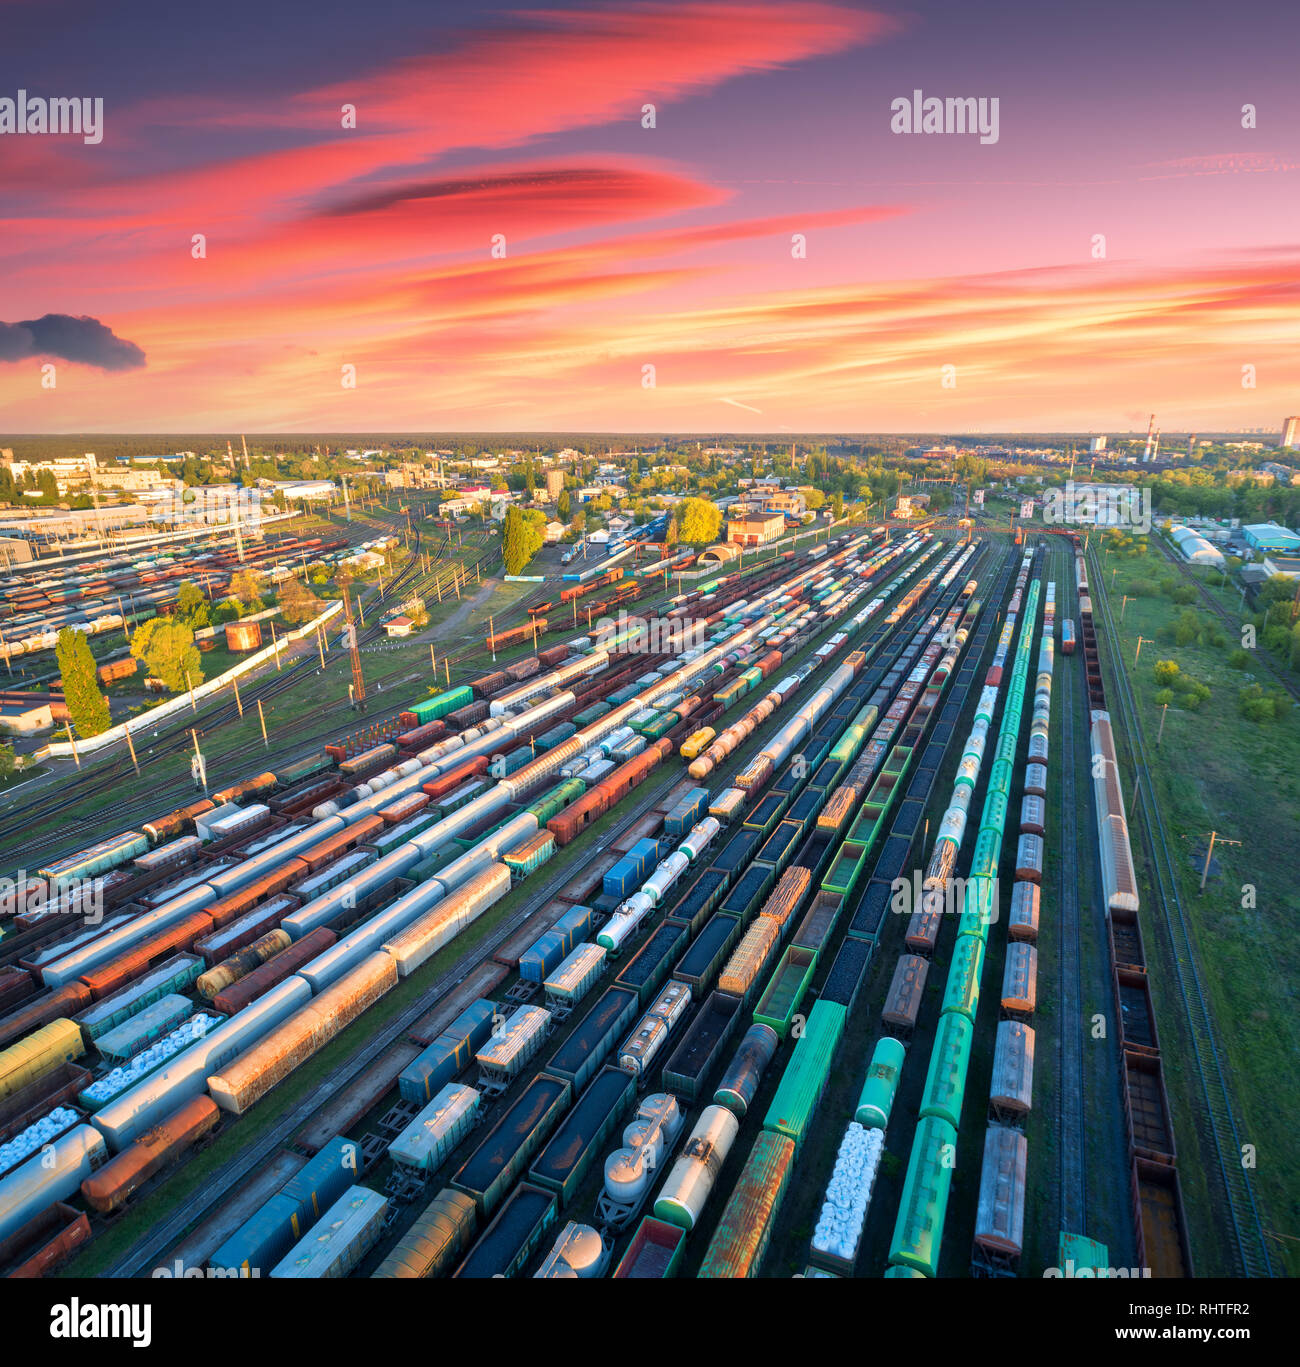 Vista aerea di treni merci sulla stazione ferroviaria al tramonto colorato. I carri con merci su ferrovia. Industria pesante. Industriali. I treni merci, città bui Foto Stock